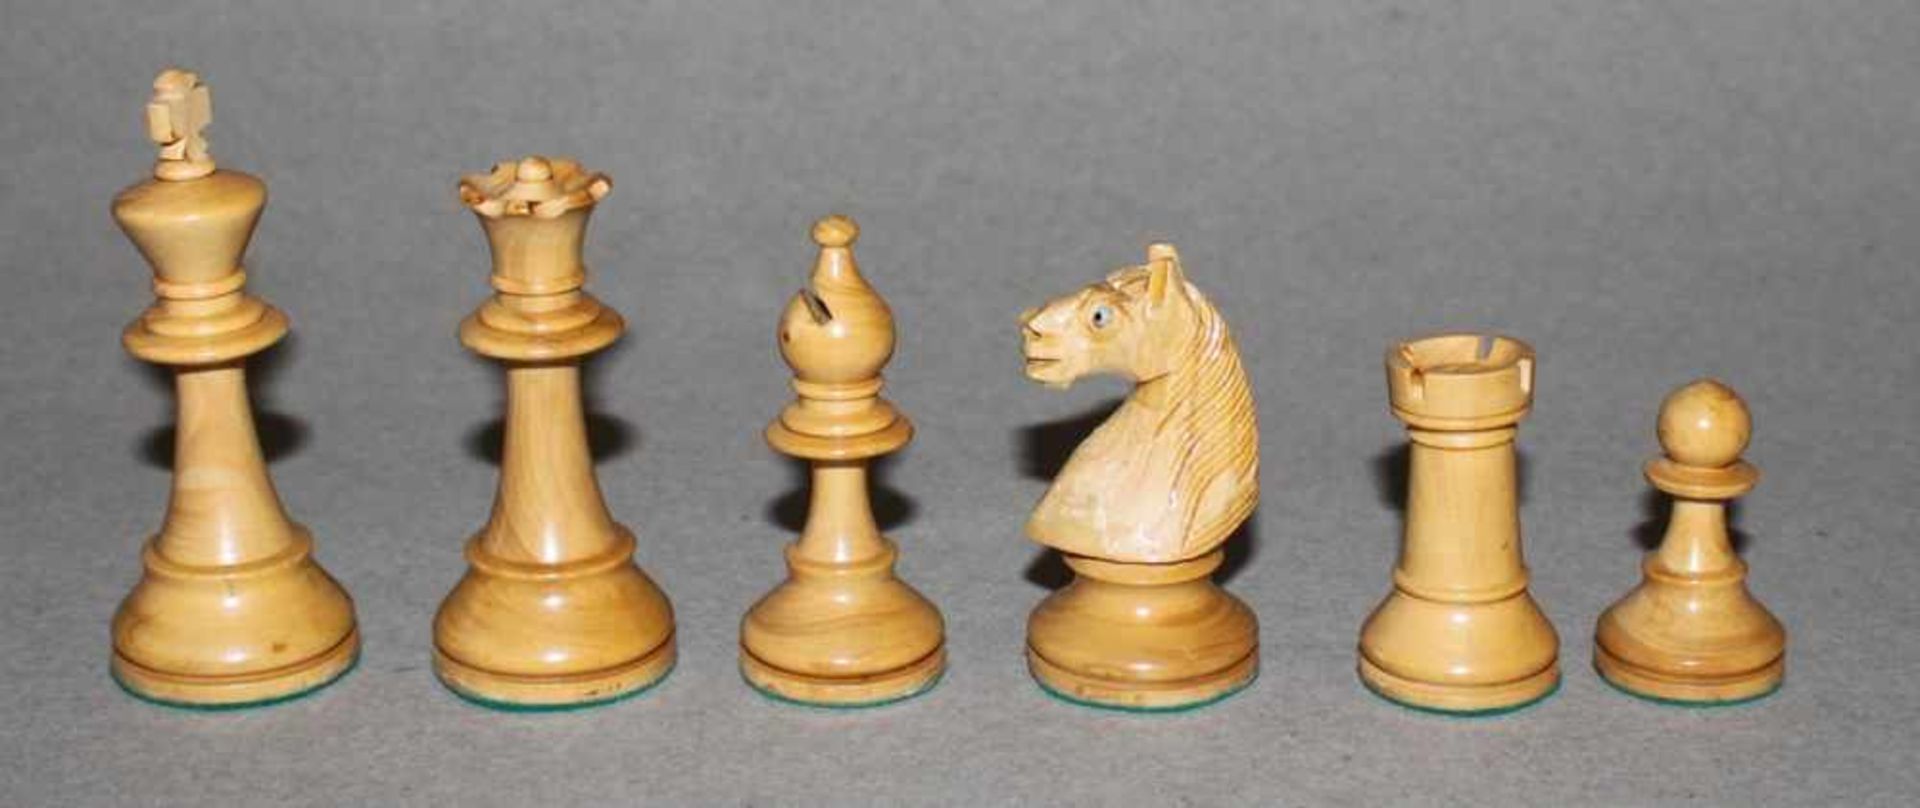 Europa. Zwei Staunton Schachspiele aus Holz.Eine Partei in schwarz, die andere naturfarben. - Bild 5 aus 6